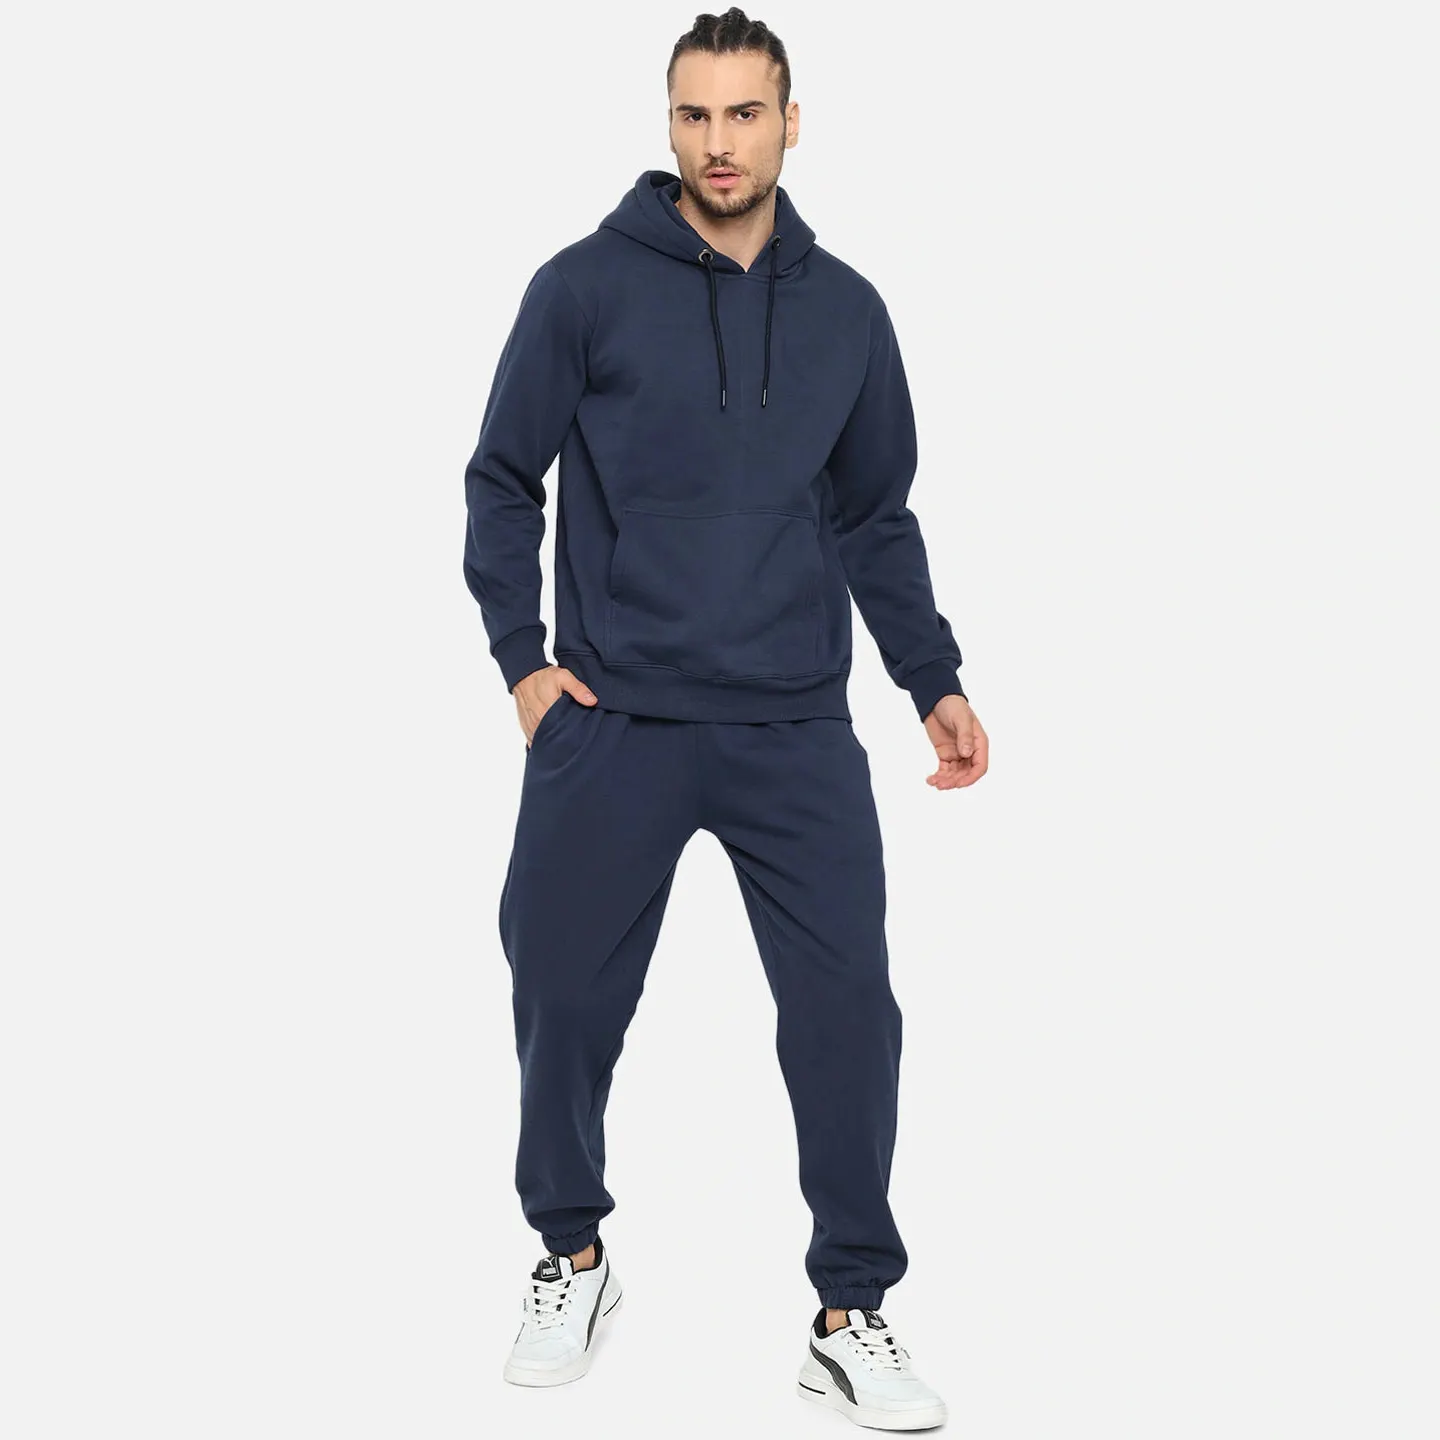 Jogger takım elbise fermuar pamuk spor erkekler zip up spor giyim eşofman kış özel logo erkekler için eşofman